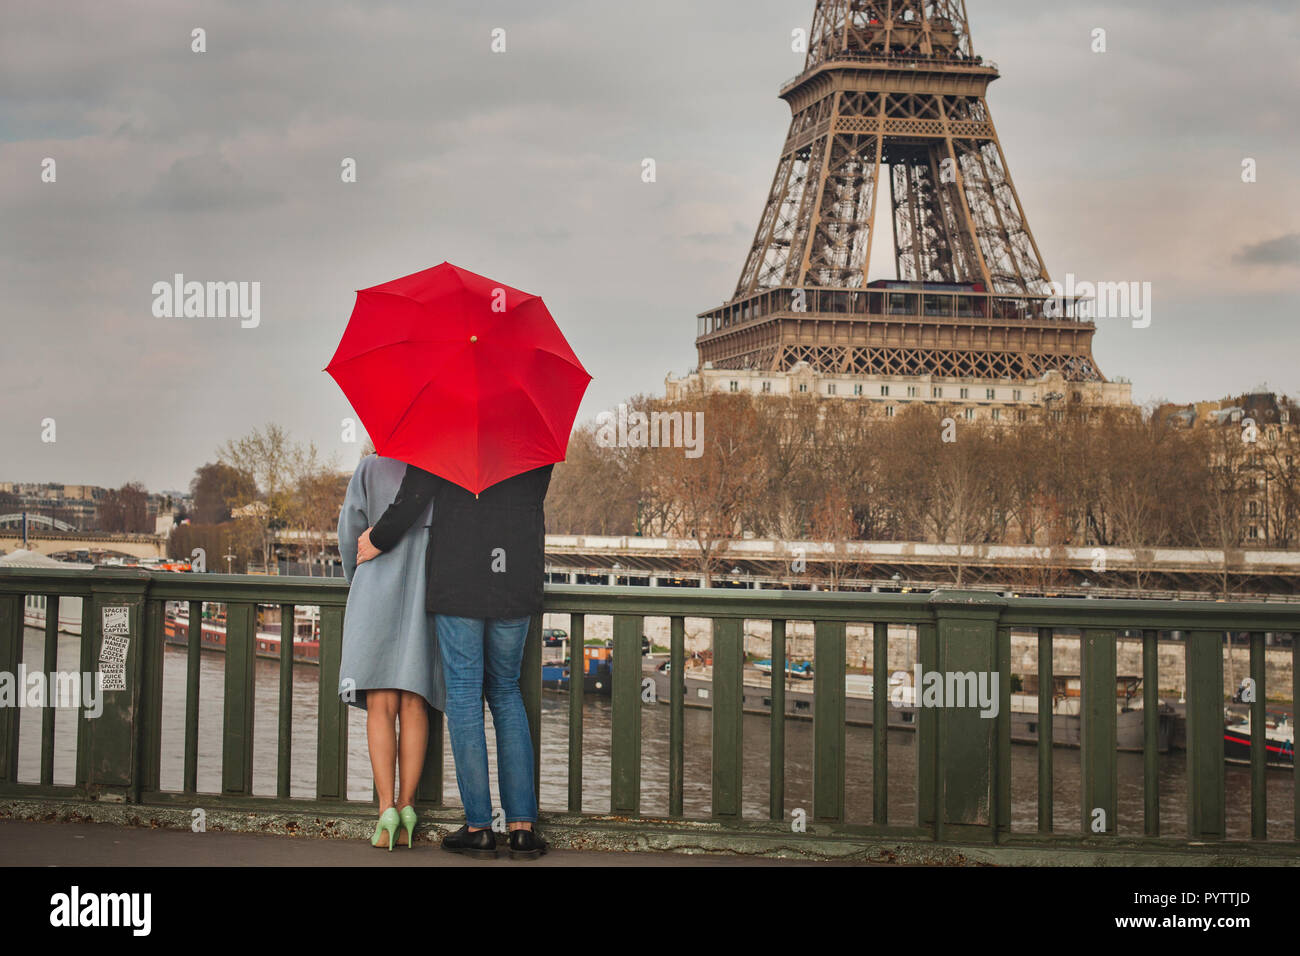 Herbst in Paris, Paar unter roten Regenschirm in der Nähe von Eiffelturm, Herbst, Liebe in regnerischen Tag, romantischen Moment auf der Brücke Stockfoto